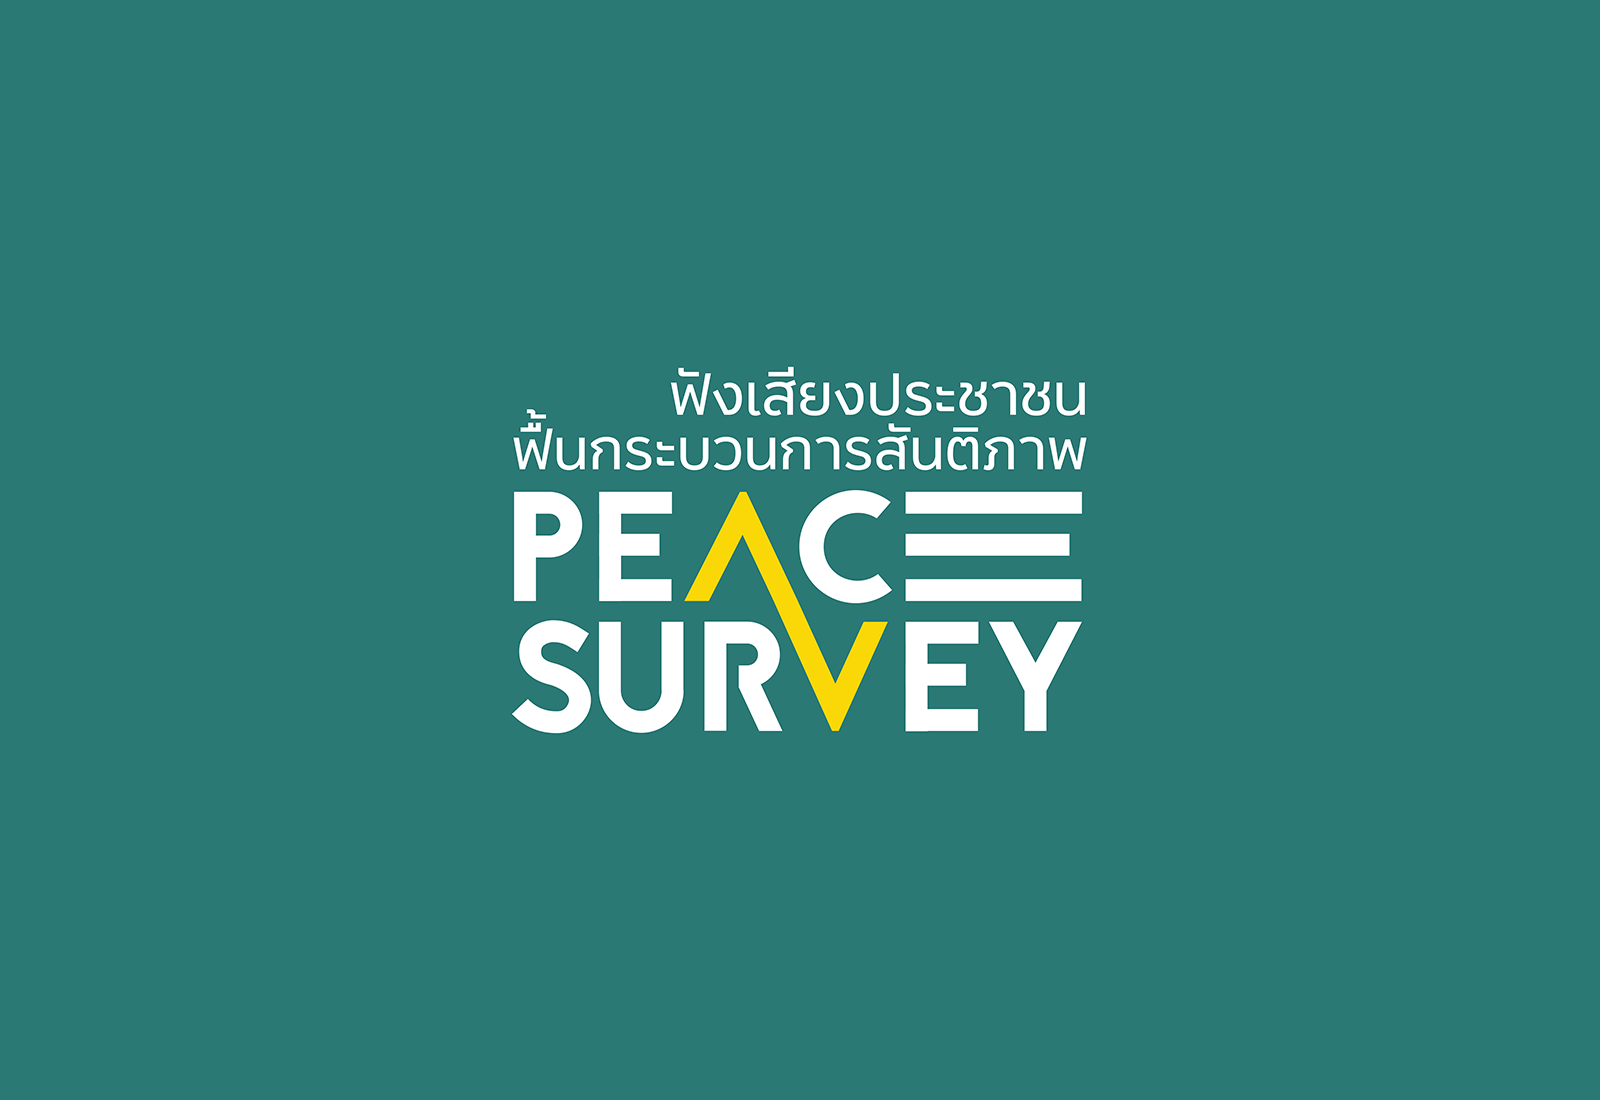 Peace Survey 5 การแถลงผลการสำรวจความคิดเห็นของประชาชนต่อกระบวนการสันติภาพจังหวัดชายแดนภายใต้ ครั้งที่ 5